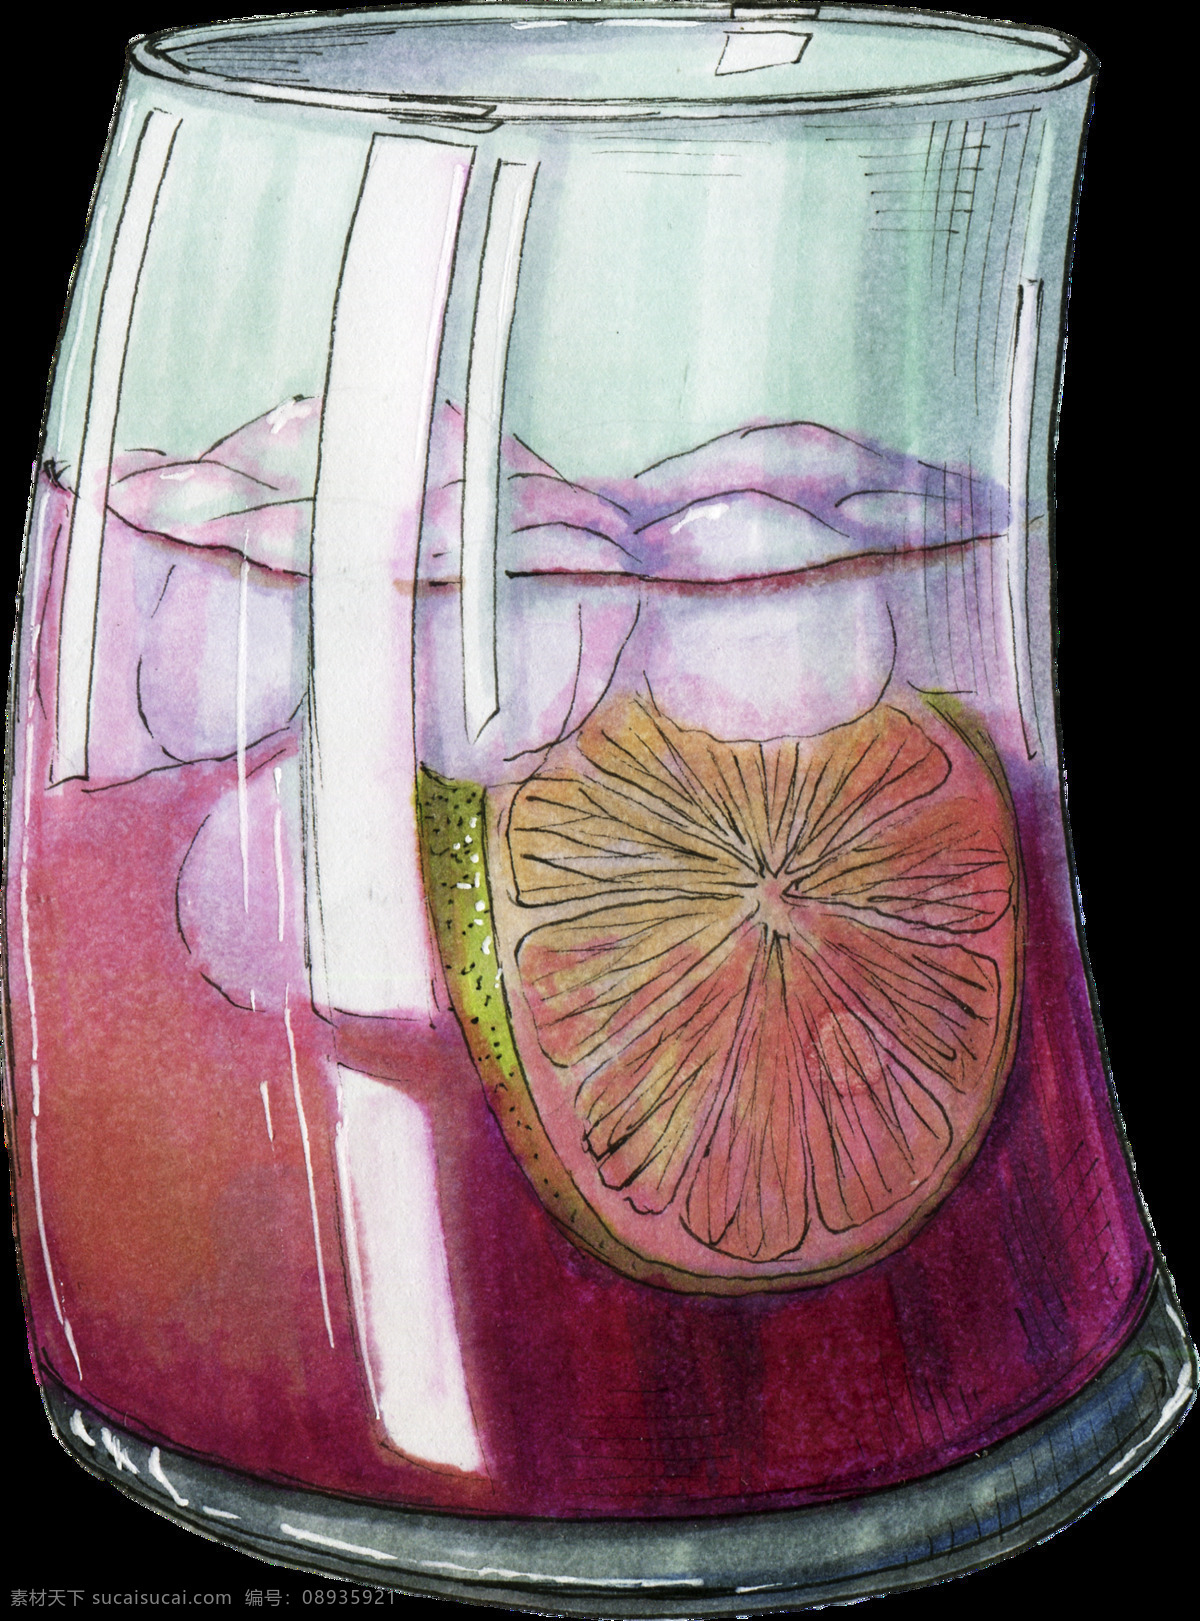 手绘 不规则 果汁 杯子 透明 装饰 图案 柠檬 冰块 紫色 装饰图案